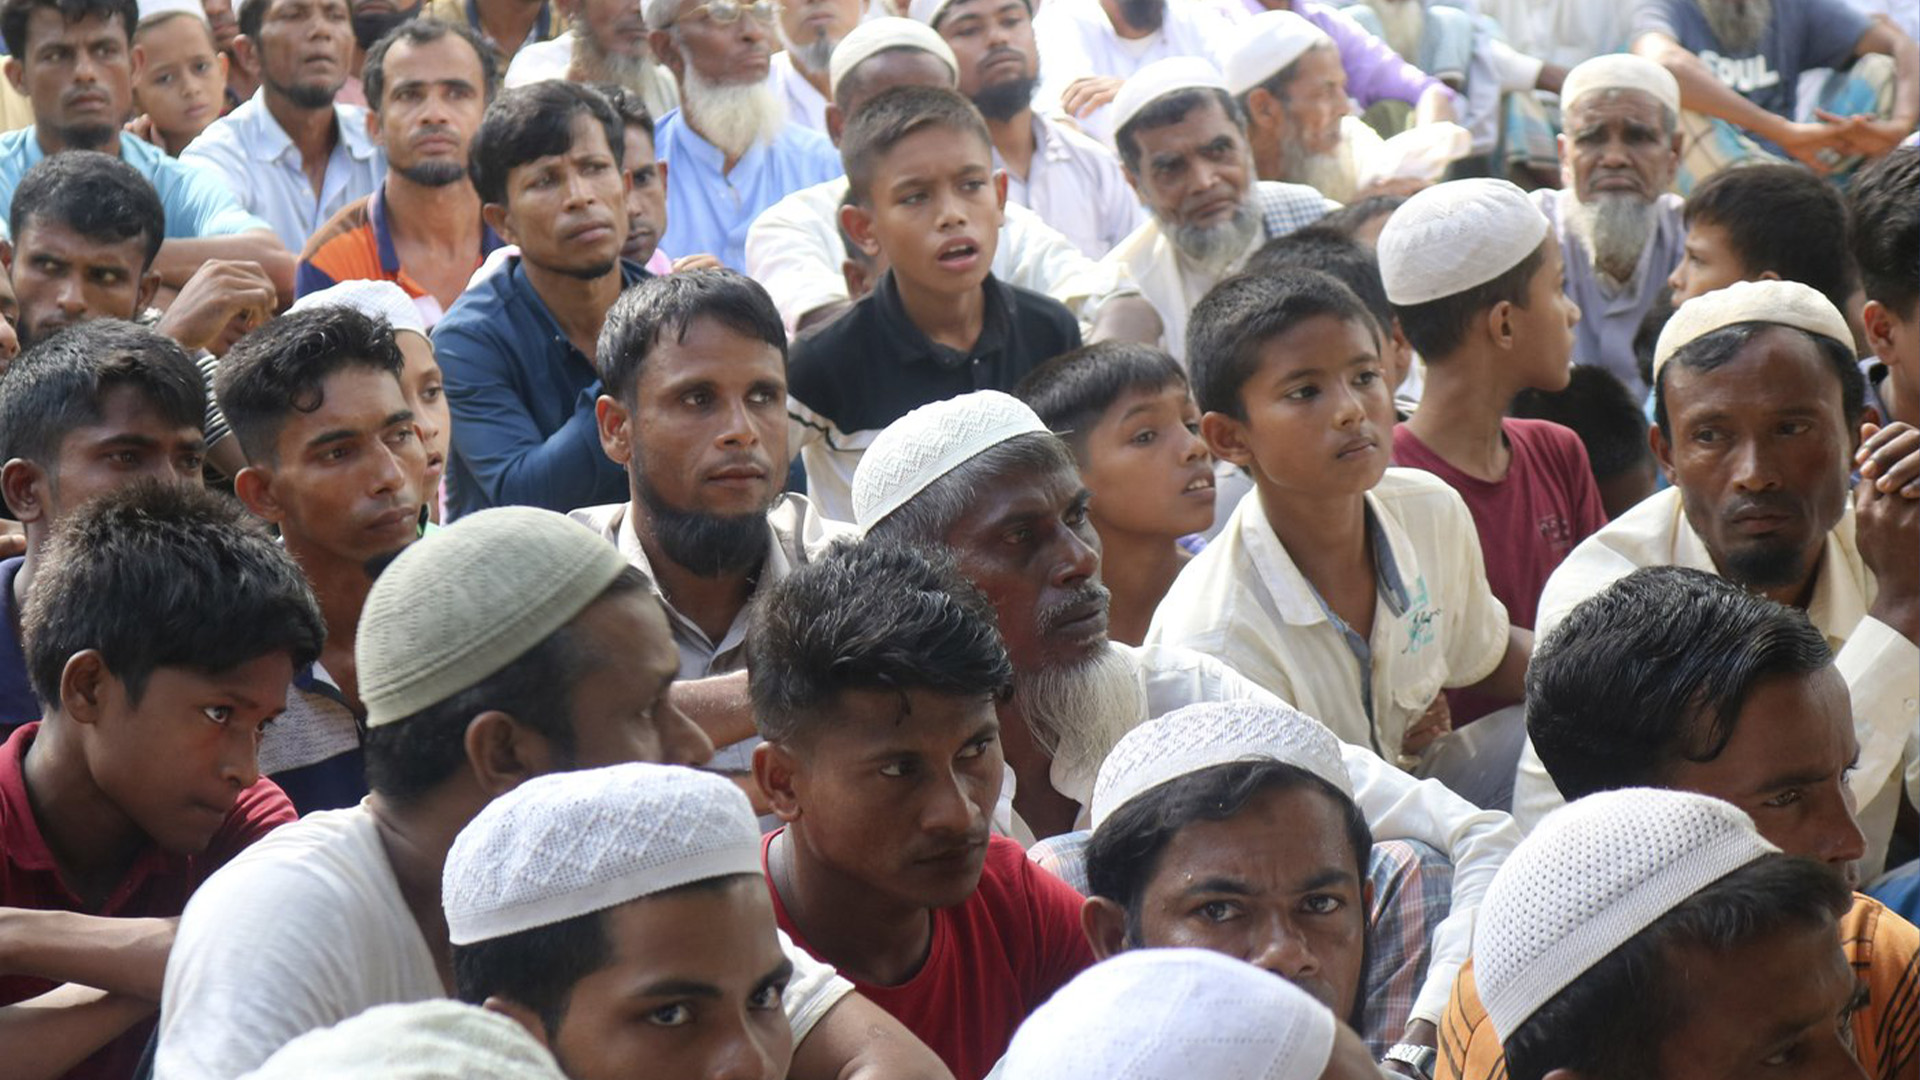 Des réfugiés rohingyas se rassemblent pour marquer le cinquième anniversaire de leur exode du Myanmar vers le Bangladesh, dans un camp de réfugiés rohingyas du district de Cox's Bazar, au Bangladesh, le jeudi 25 août 2022. Le Canada a sanctionné davantage d'élites militaires du Myanmar, deux ans après la Le pays, anciennement connu sous le nom de Birmanie, a connu un recul démocratique et une série de crises humanitaires, en plus de la persécution de la minorité Rohingya.